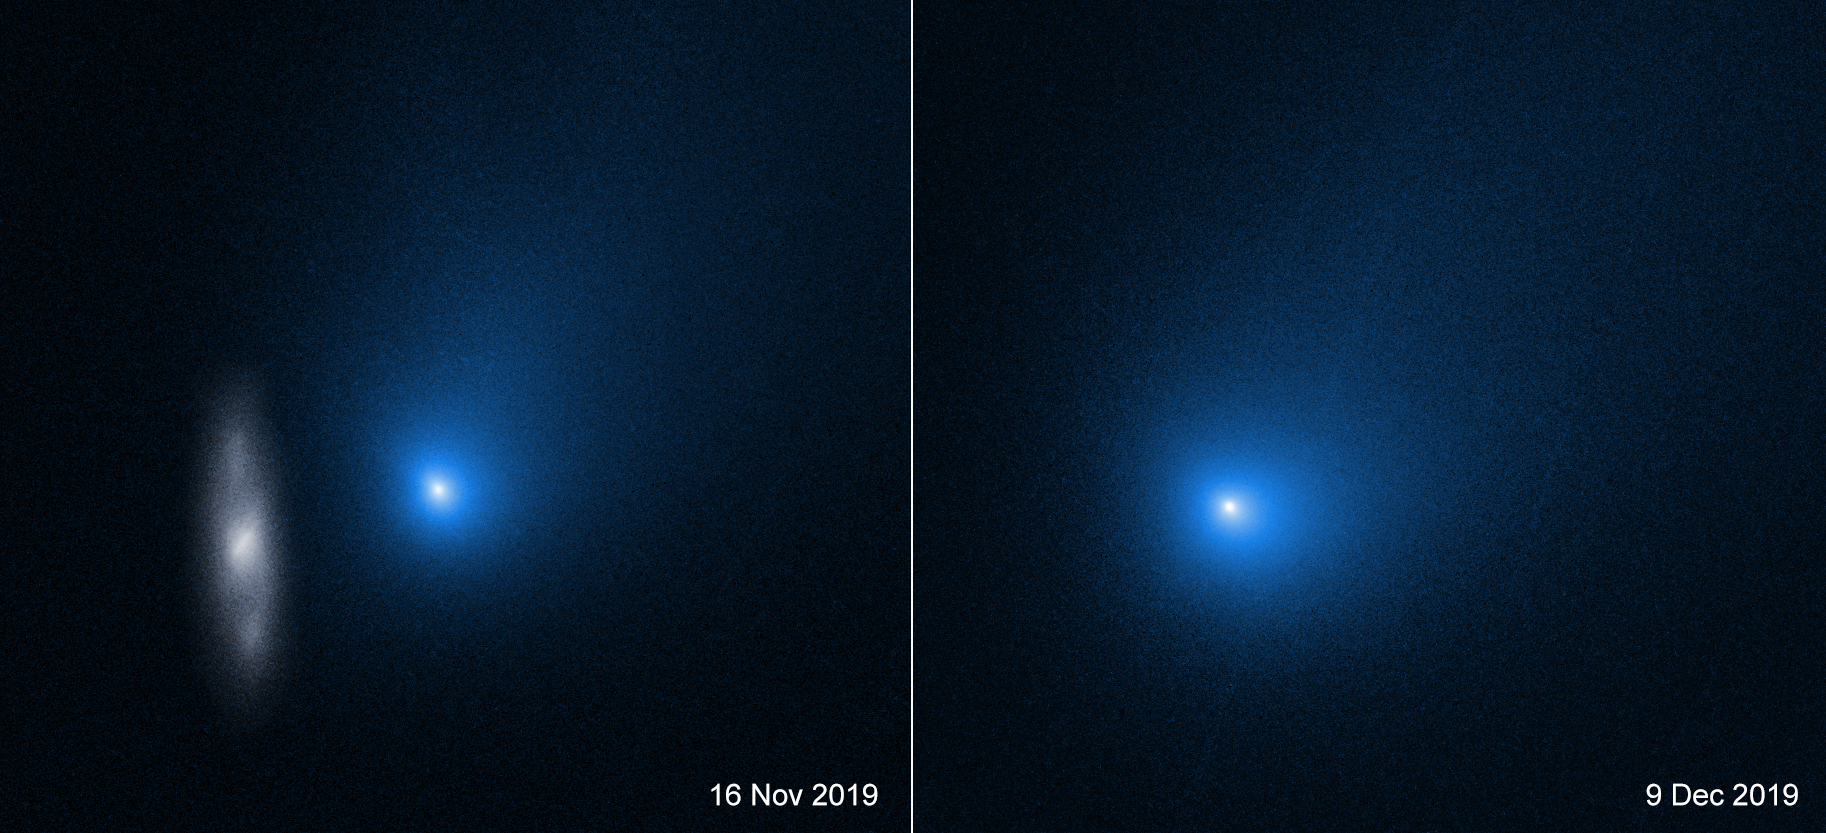 Interstellar Comet 2I Borisov